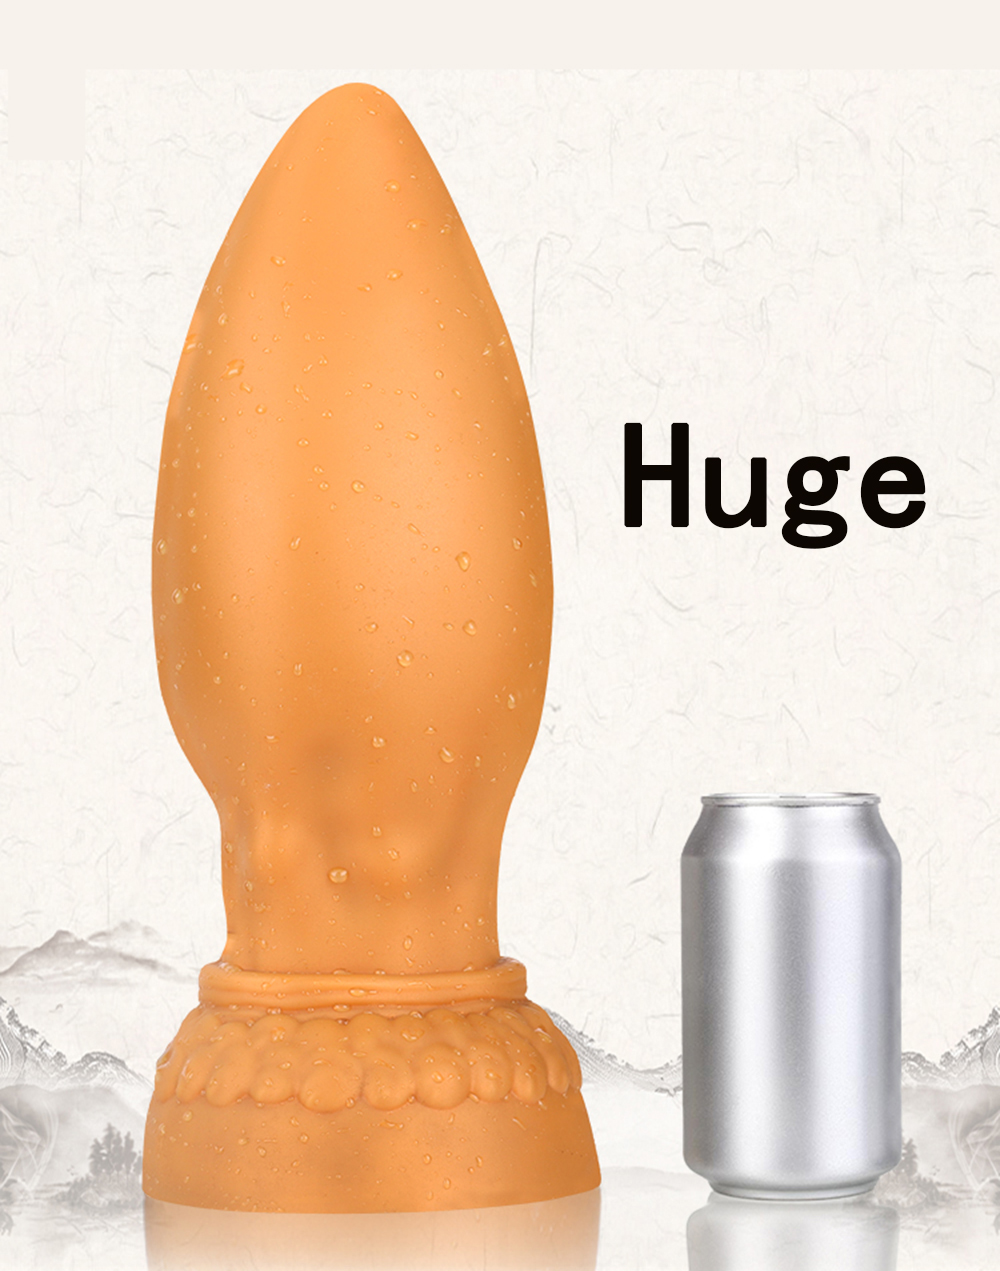 Super enorme anal plugue anal vibrador bunda plug vagina ânus dilatador estimulador próstata massageador erótico adulto brinquedos sexuais para mulher homem